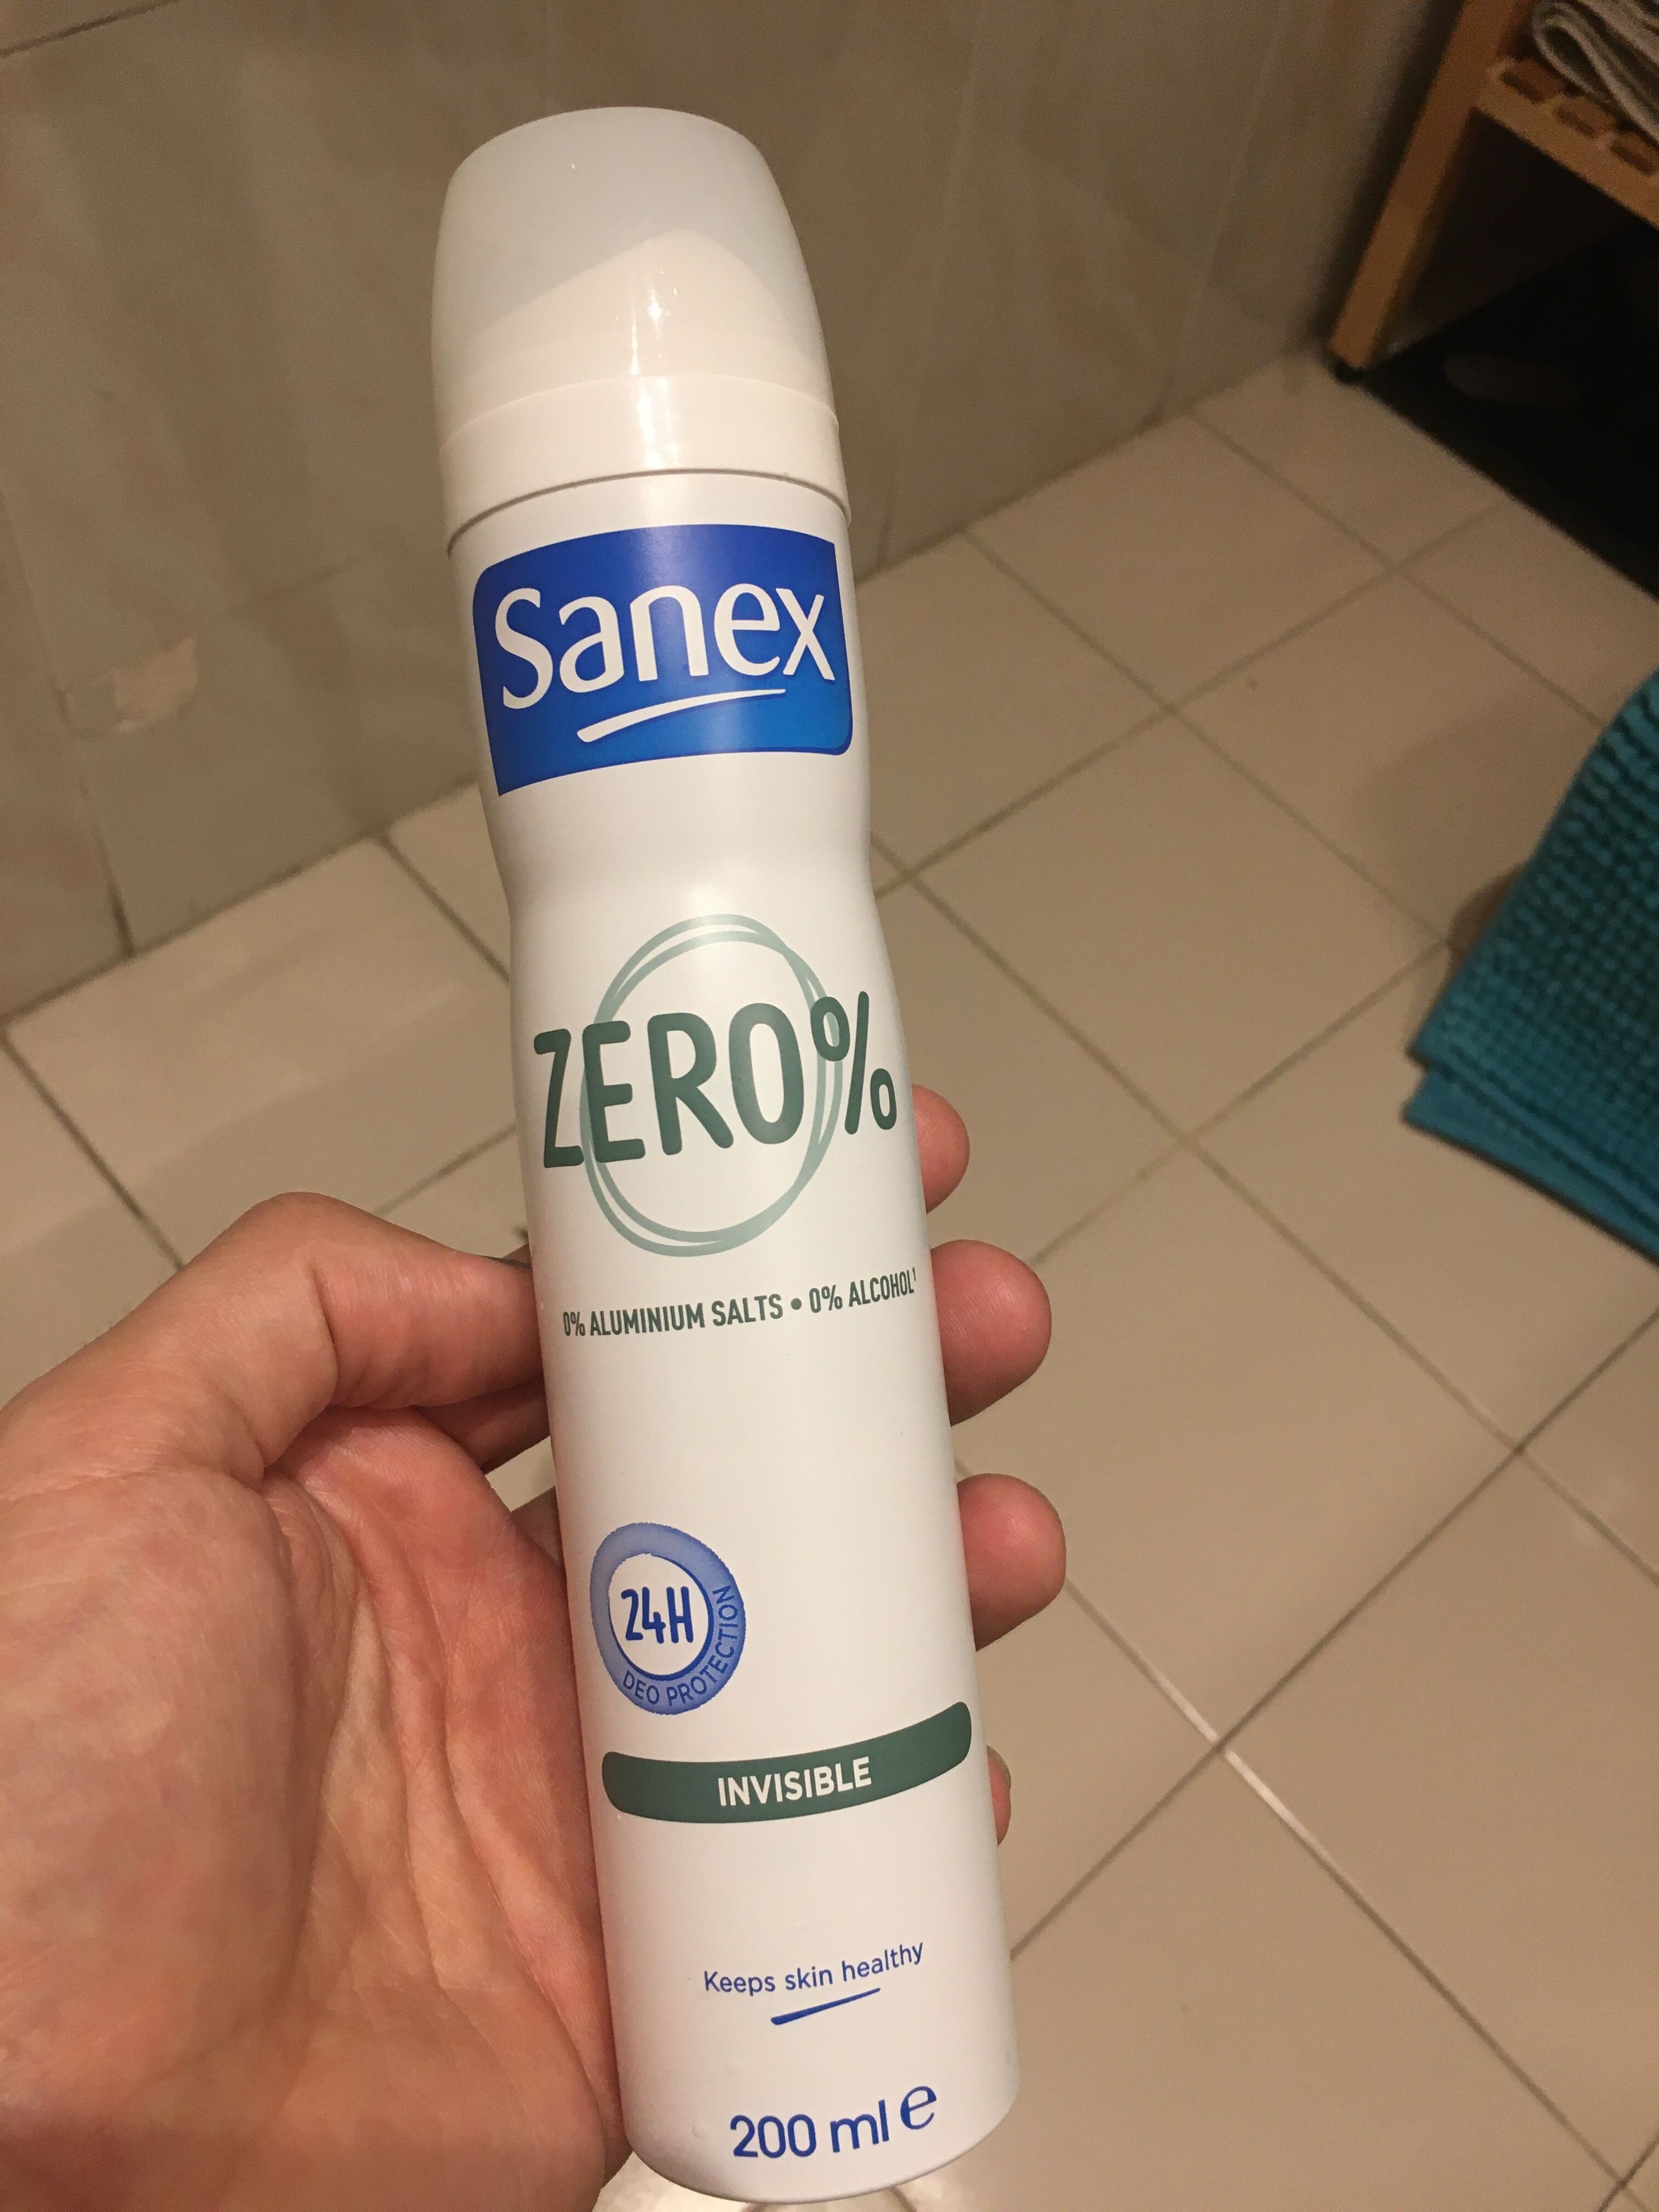 Sanex zero% - Product - en